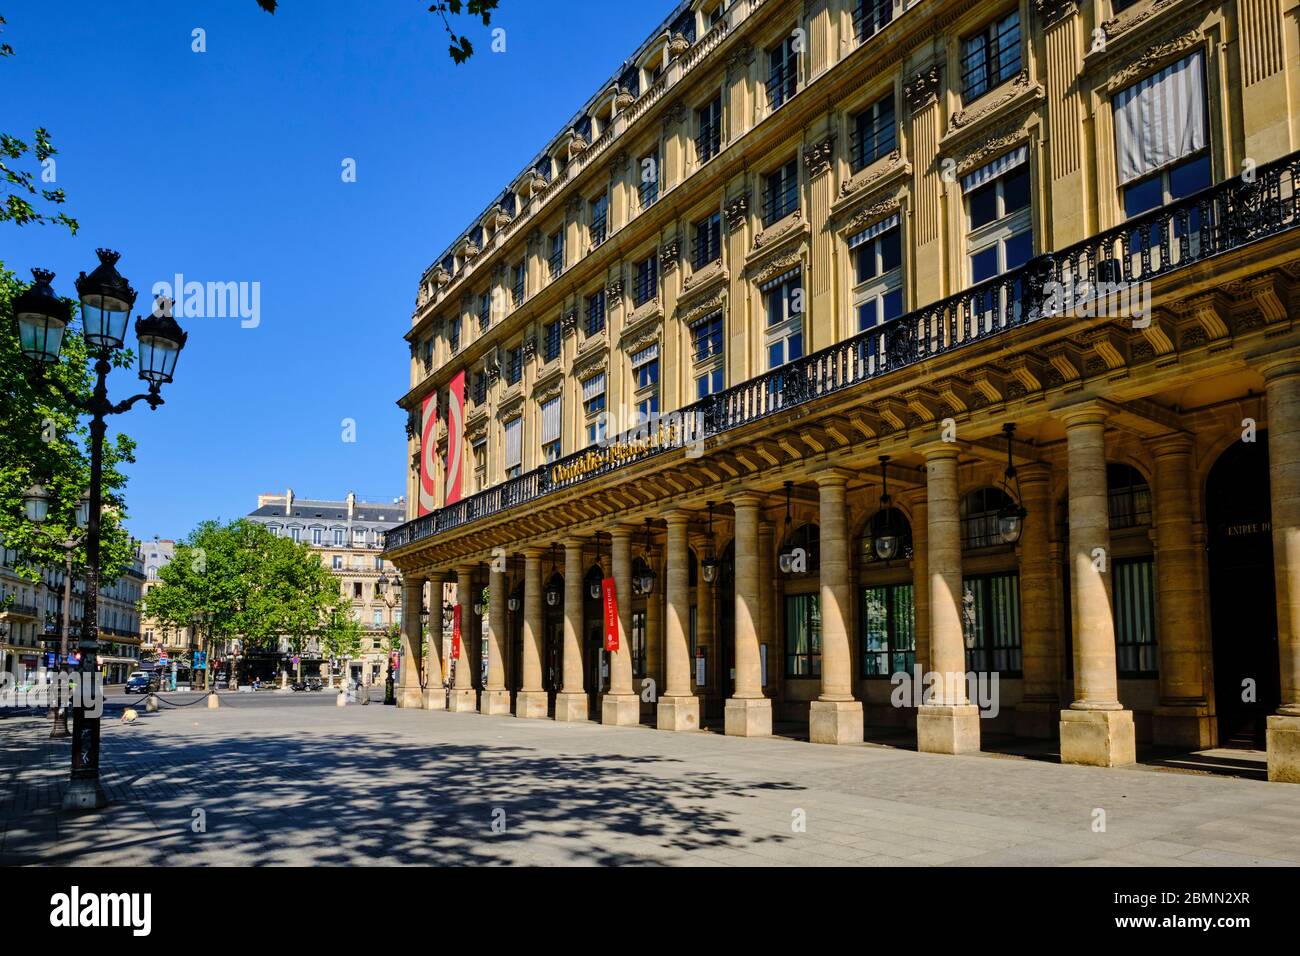 Francia, París, el teatro Comédie Française situado en el Palacio Real durante el cierre de Covid 19 Foto de stock